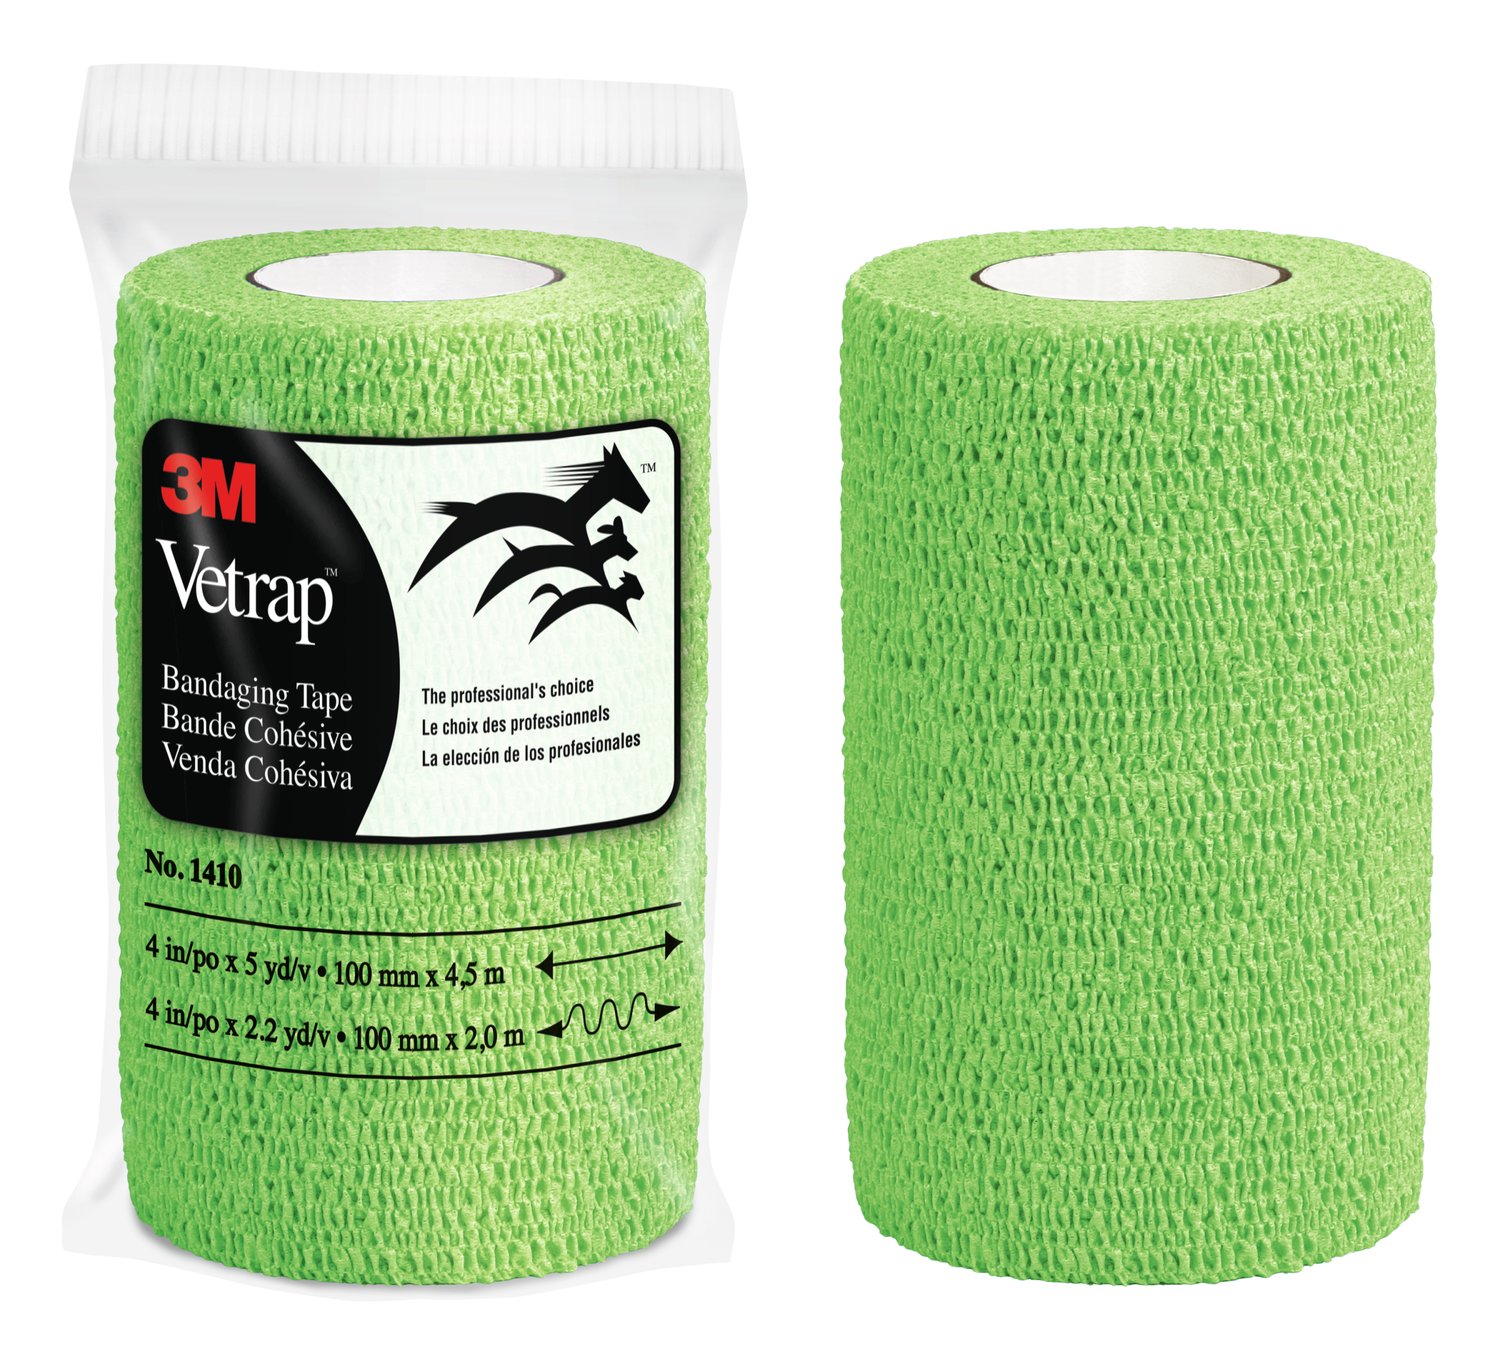 7000053555 - 3M Vetrap Bandaging Tape, 1410LG Lime Green